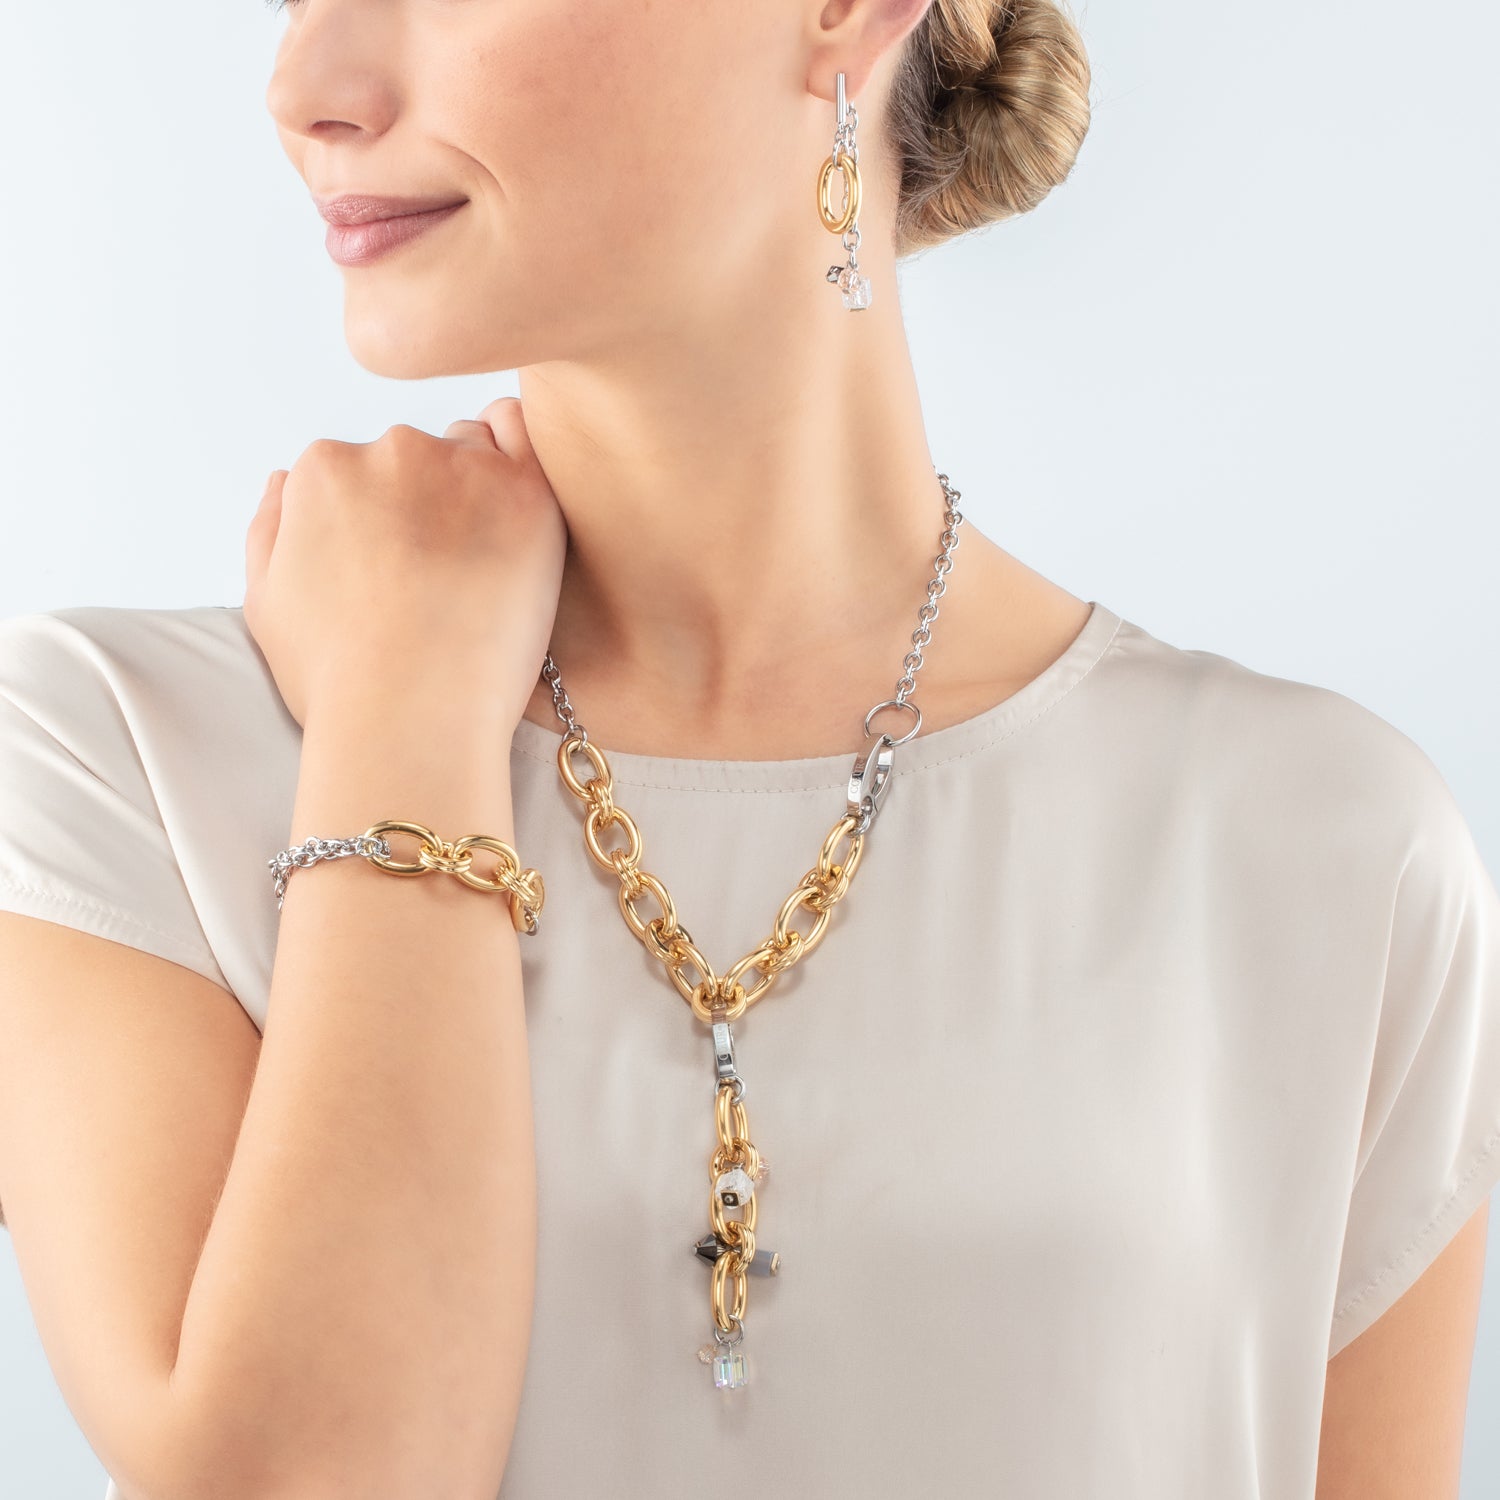 Neptune's Treasure bicolor necklace